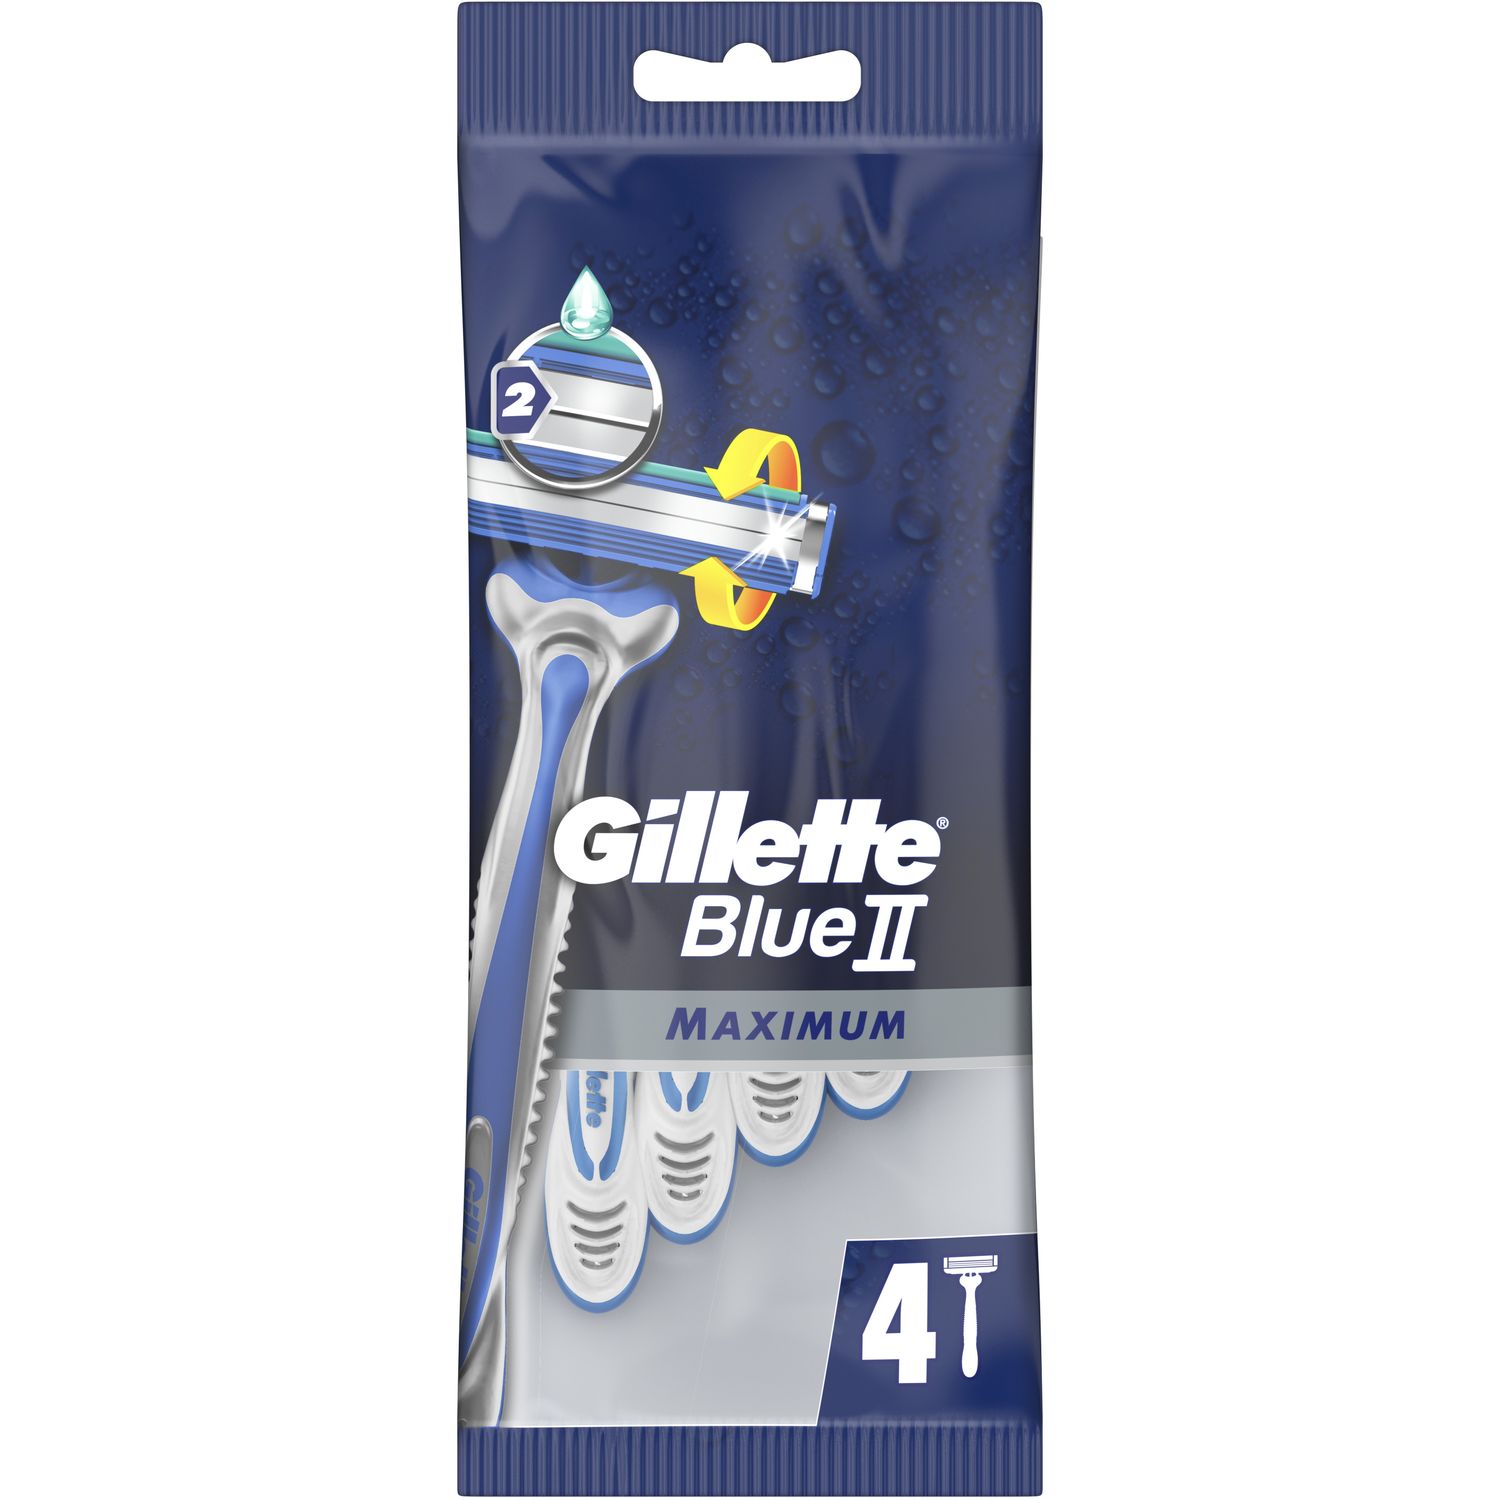 Одноразовый бритвенный станок Gillette Blue 2 Maximum, 4 шт. - фото 2